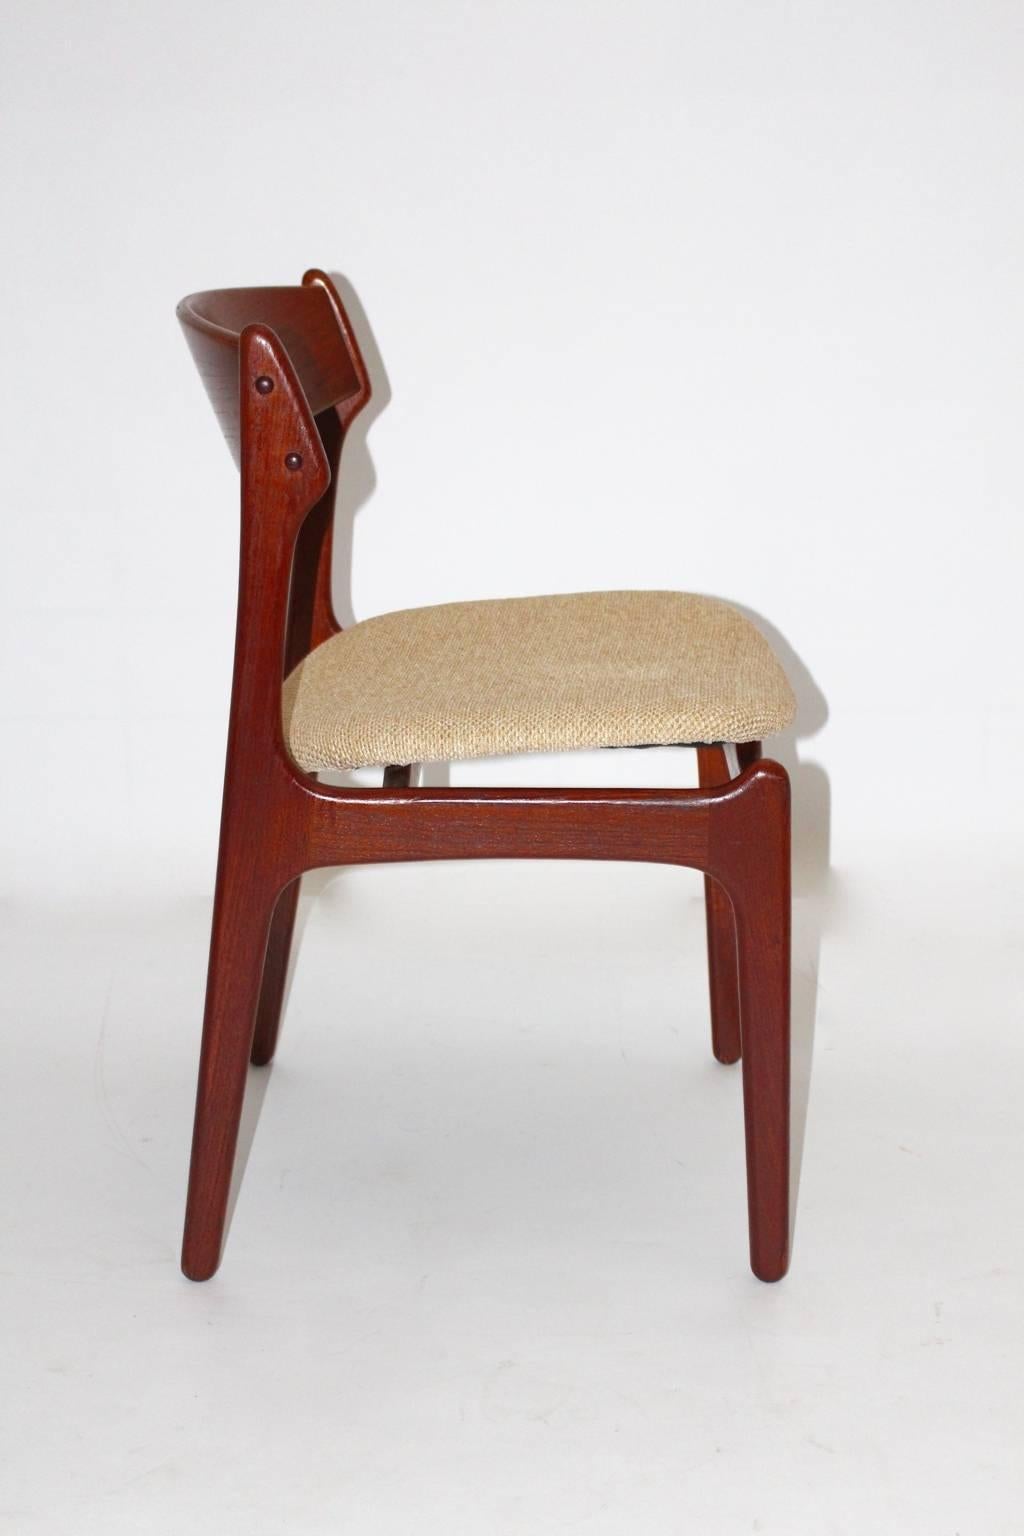 Skandinavisch-moderner Satz von sechs Vintage-Esszimmerstühlen, entworfen von Erik Buck, 1967, Dänemark und hergestellt von O. D. Mobler.
Während das Sitzgestell aus massivem Teakholz gefertigt ist, wurde die Sitzschale aus Sperrholz hergestellt und